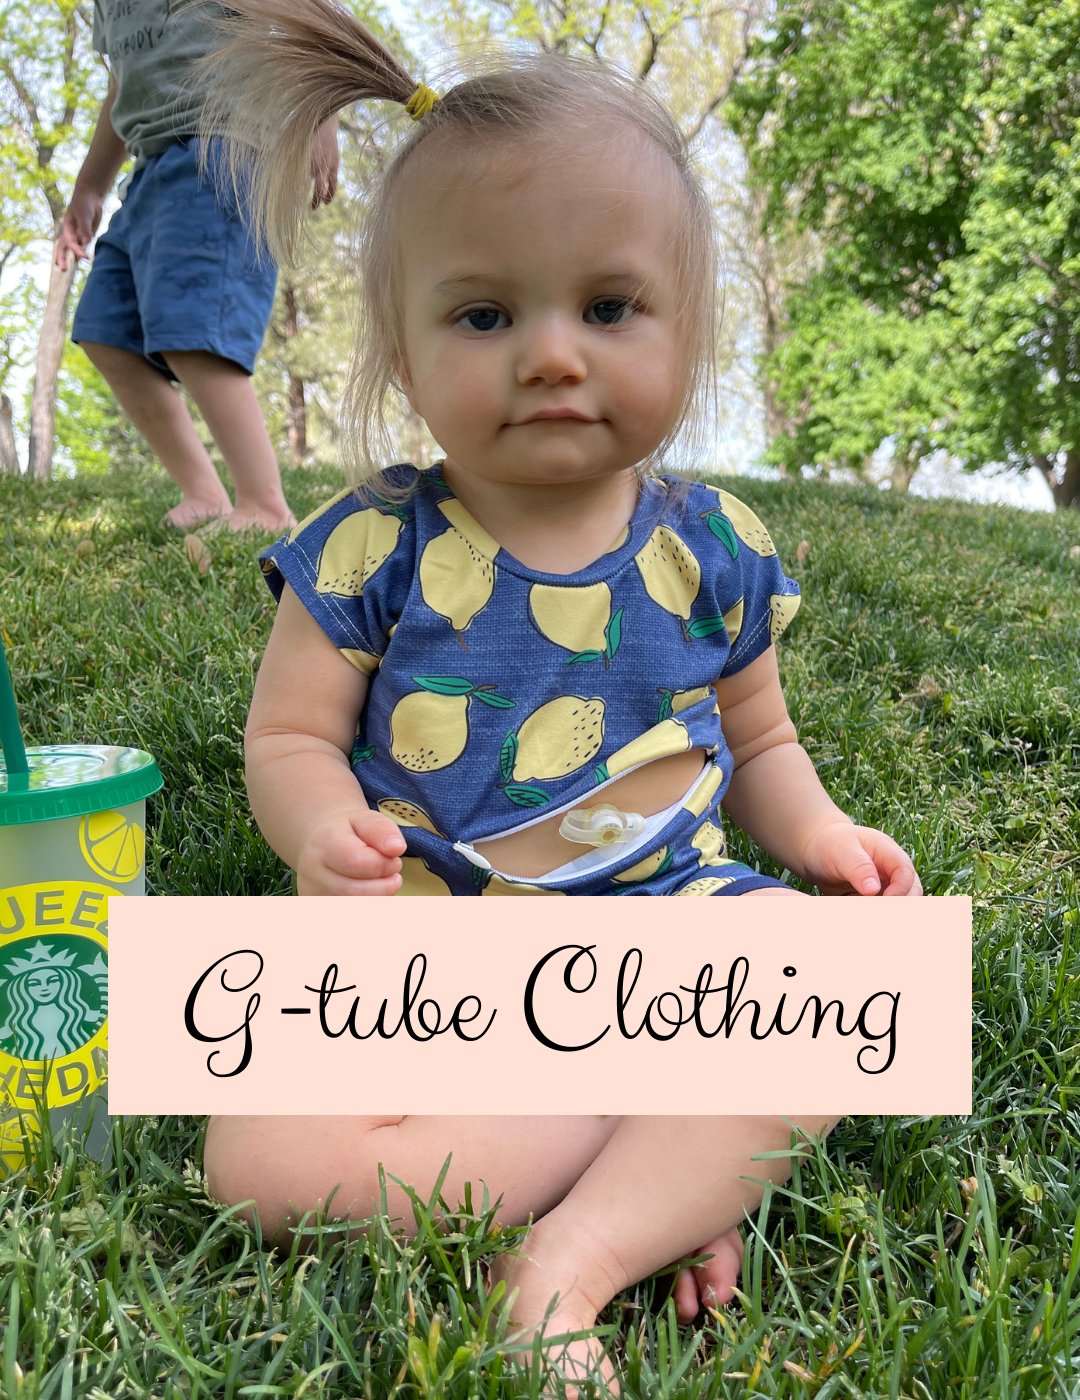 G-Tube Clothing for Children